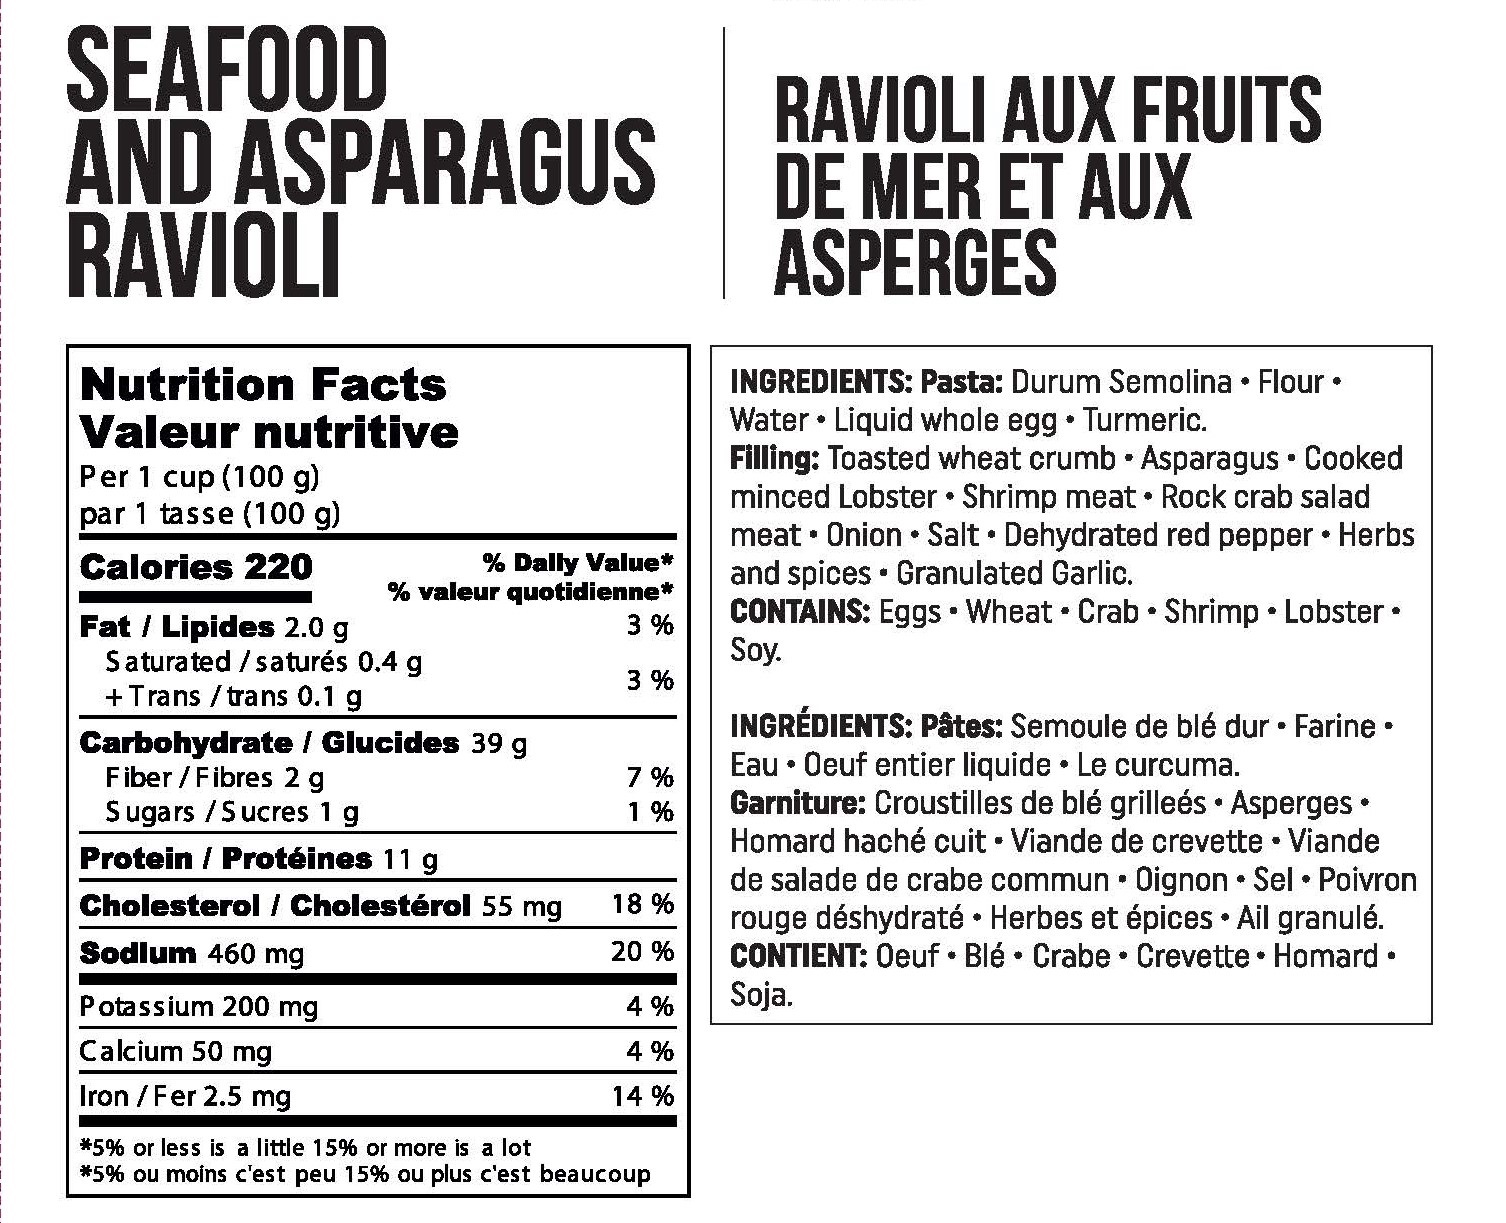 Seafood and Asparagus Ravioli